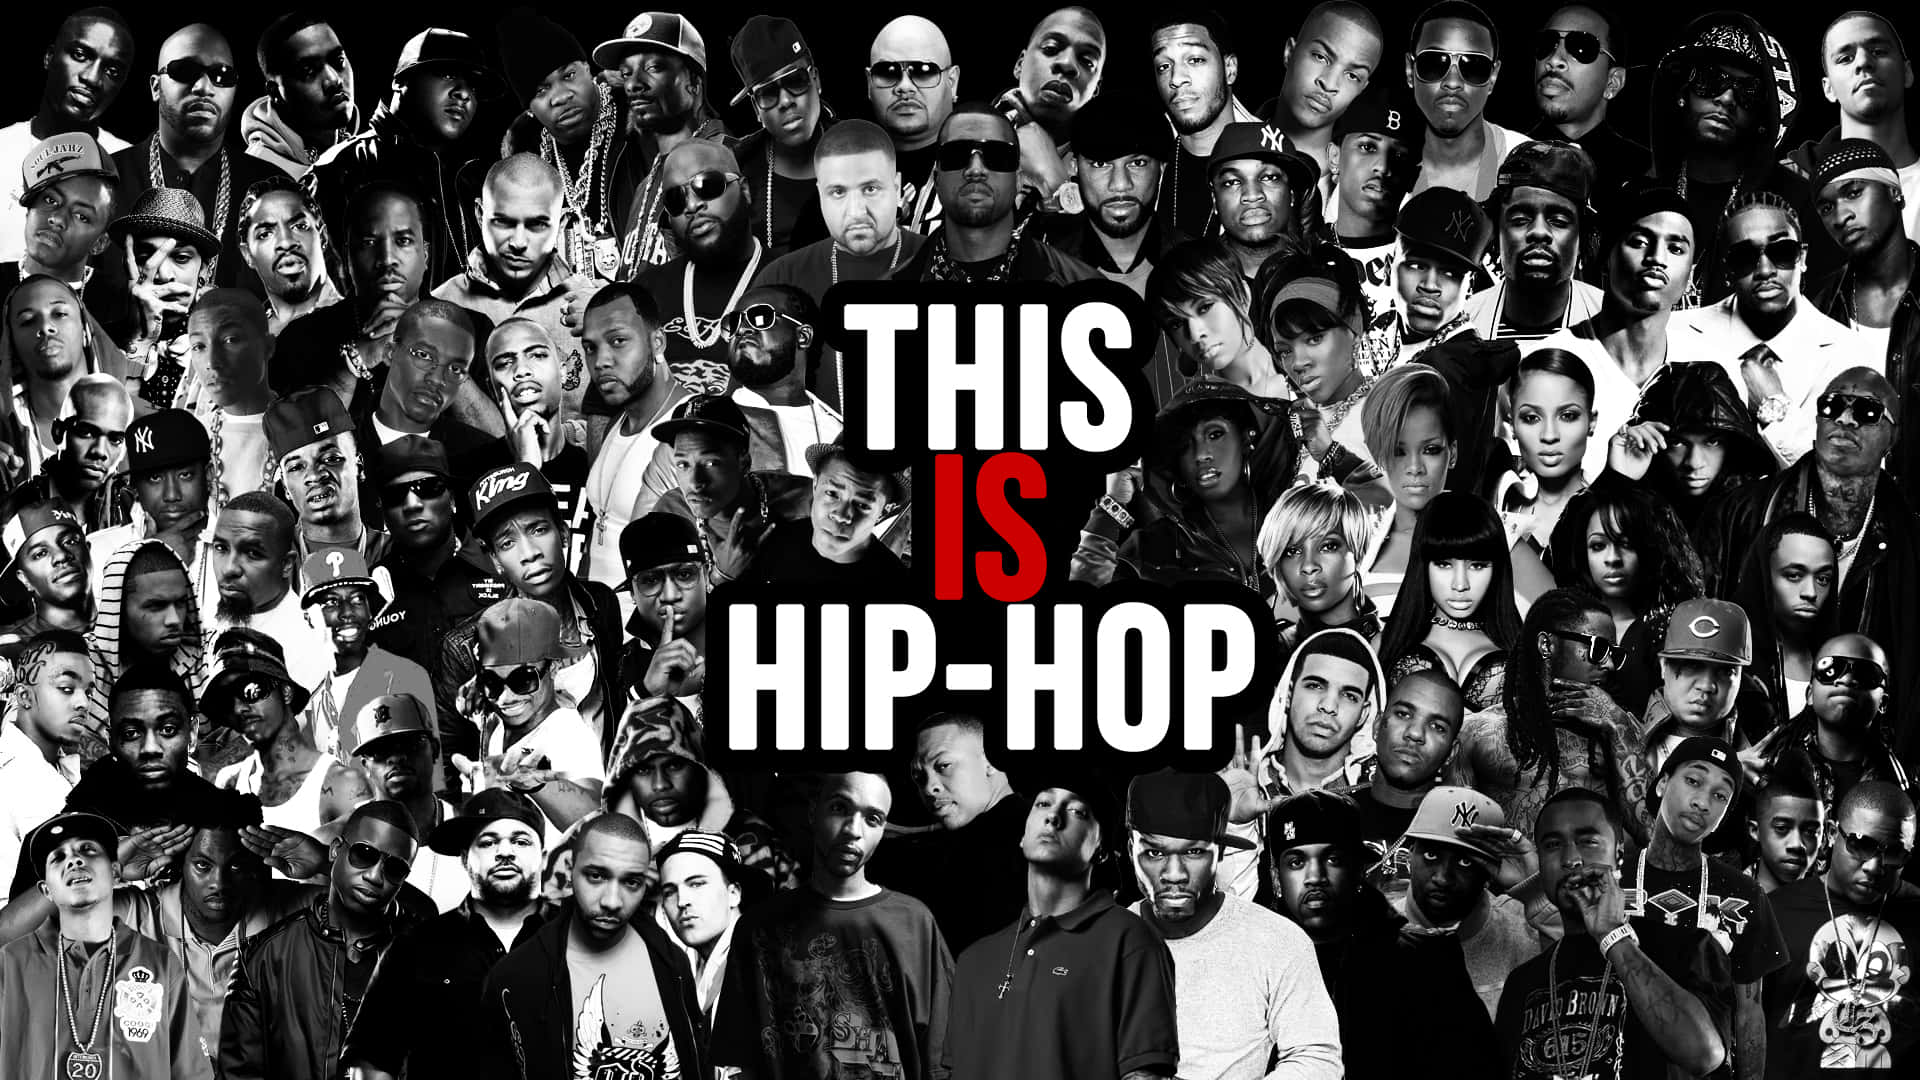 Dasist Hip-hop Von Dj Snoop Dogg Wallpaper